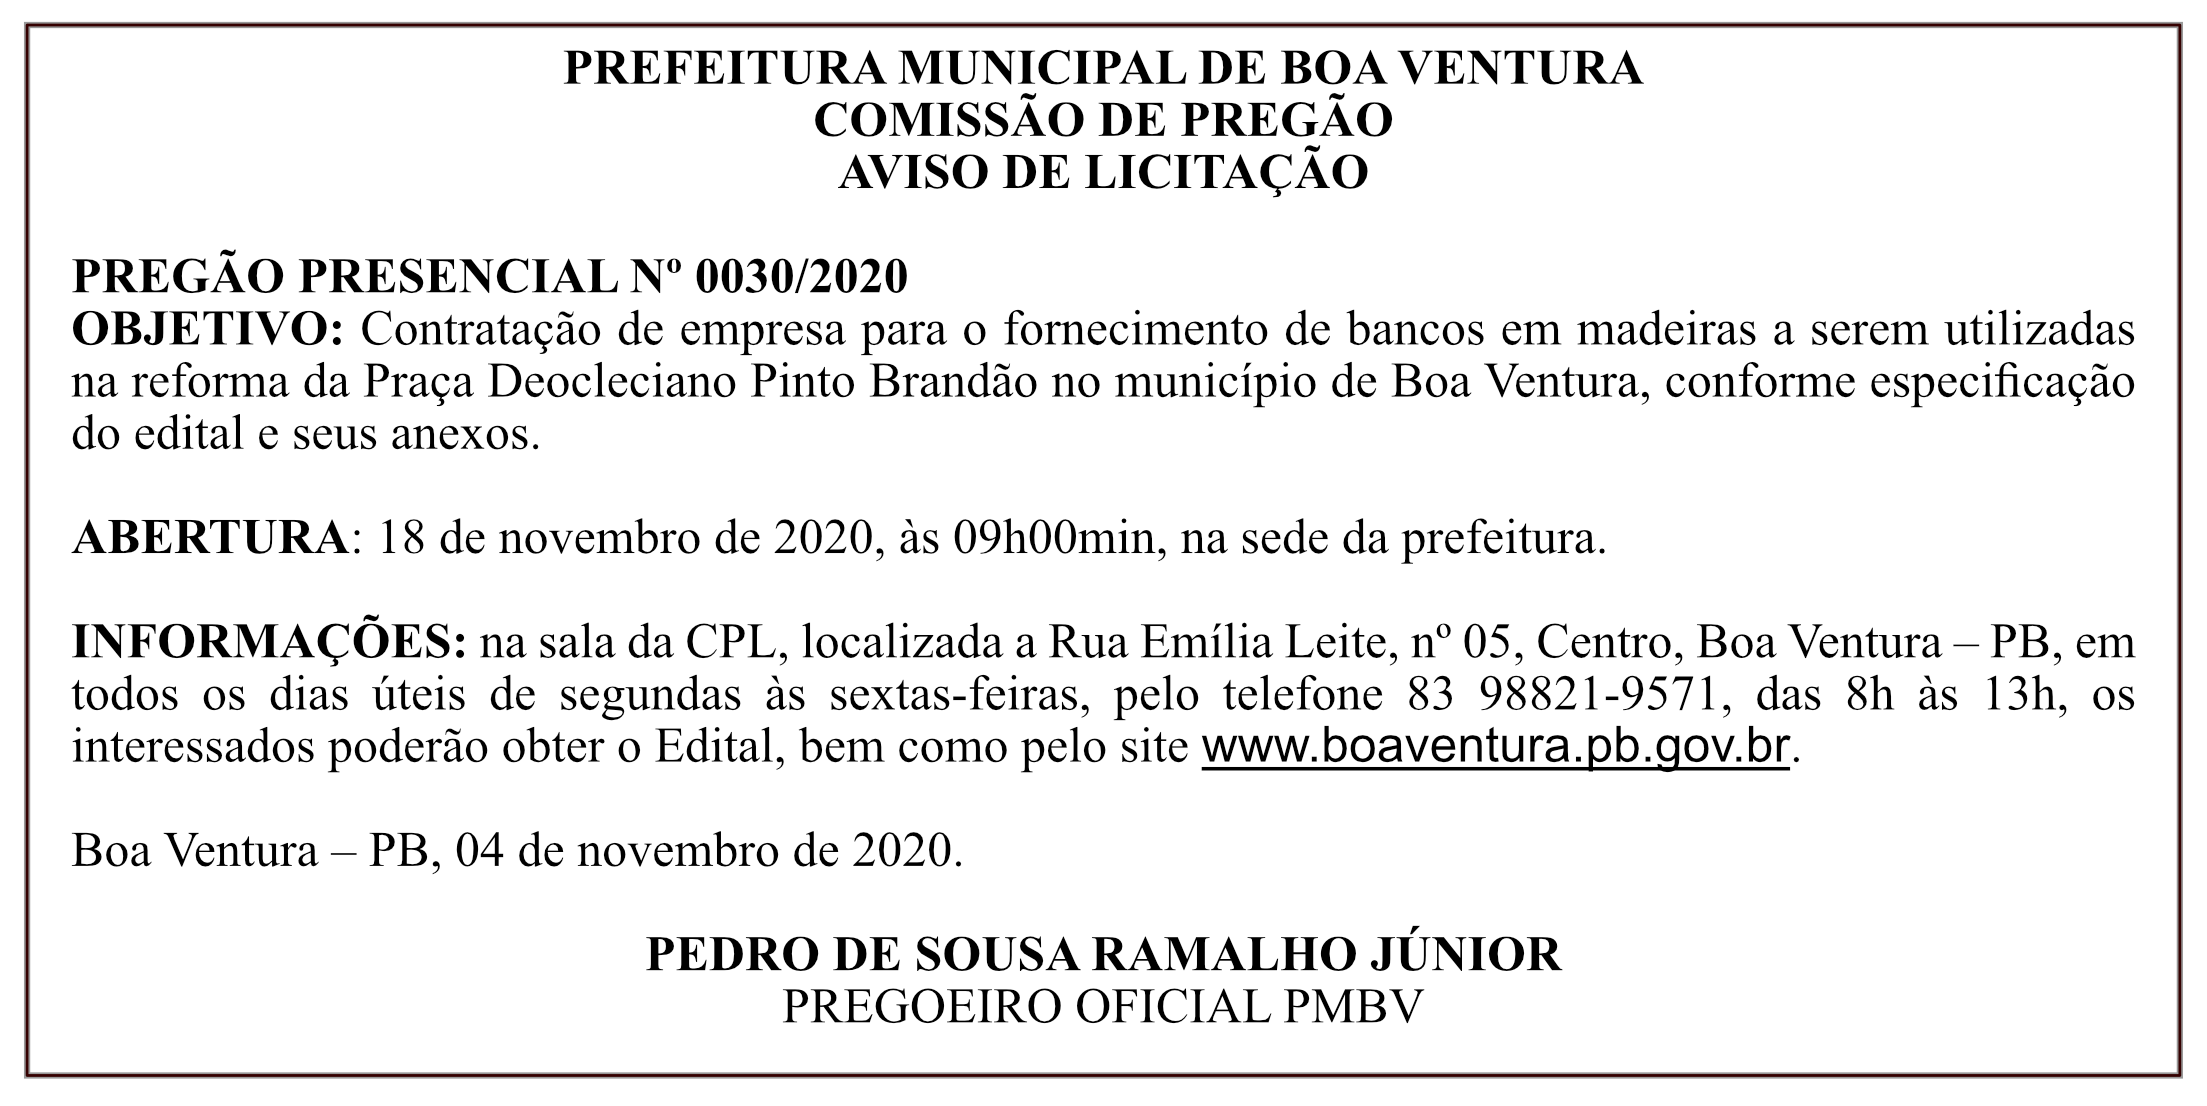 PREFEITURA MUNICIPAL DE BOA VENTURA – AVISO DE LICITAÇÃO – PREGÃO PRESENCIAL Nº 0030/2020